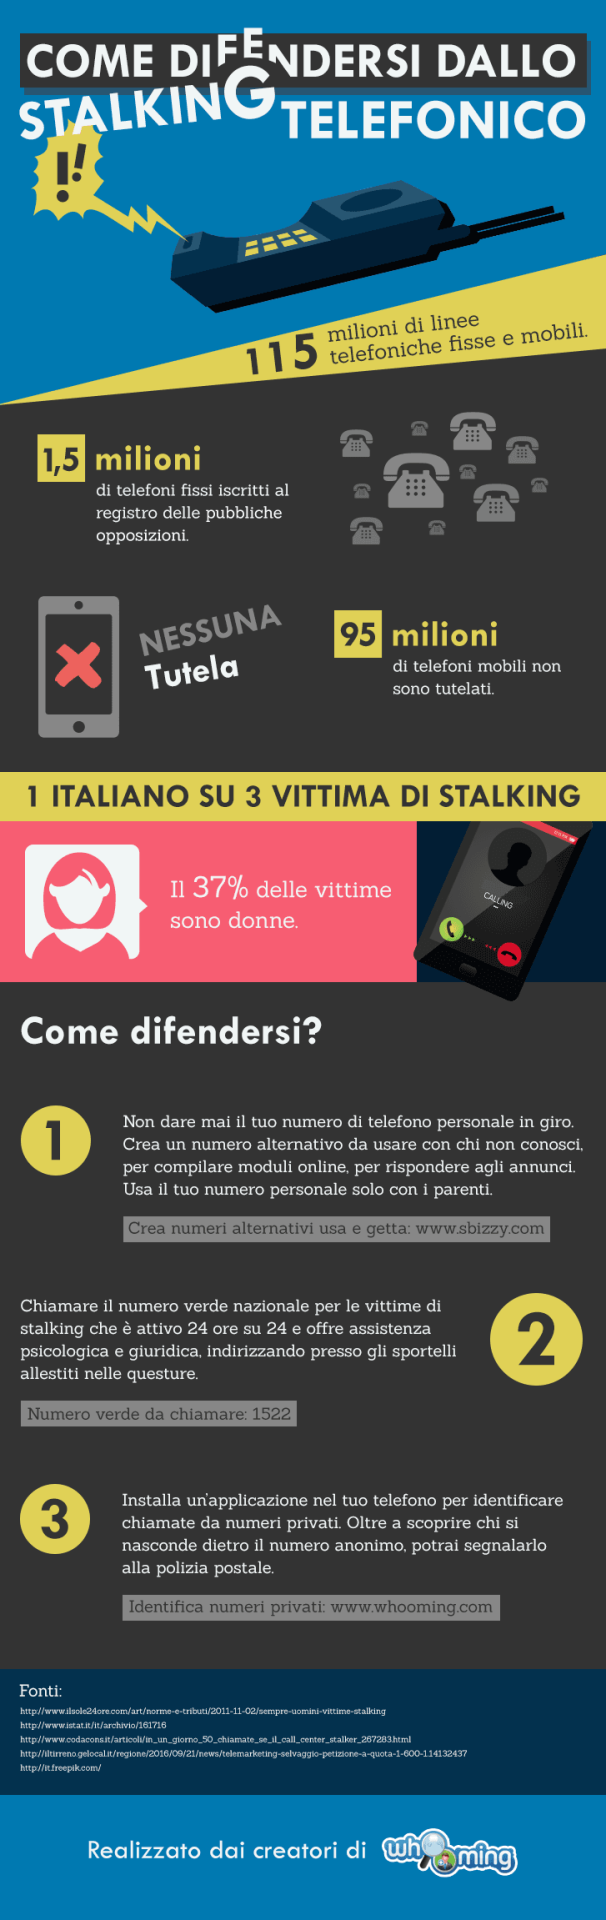 3 Utili Consigli per Difendersi dallo Stalking Telefonico